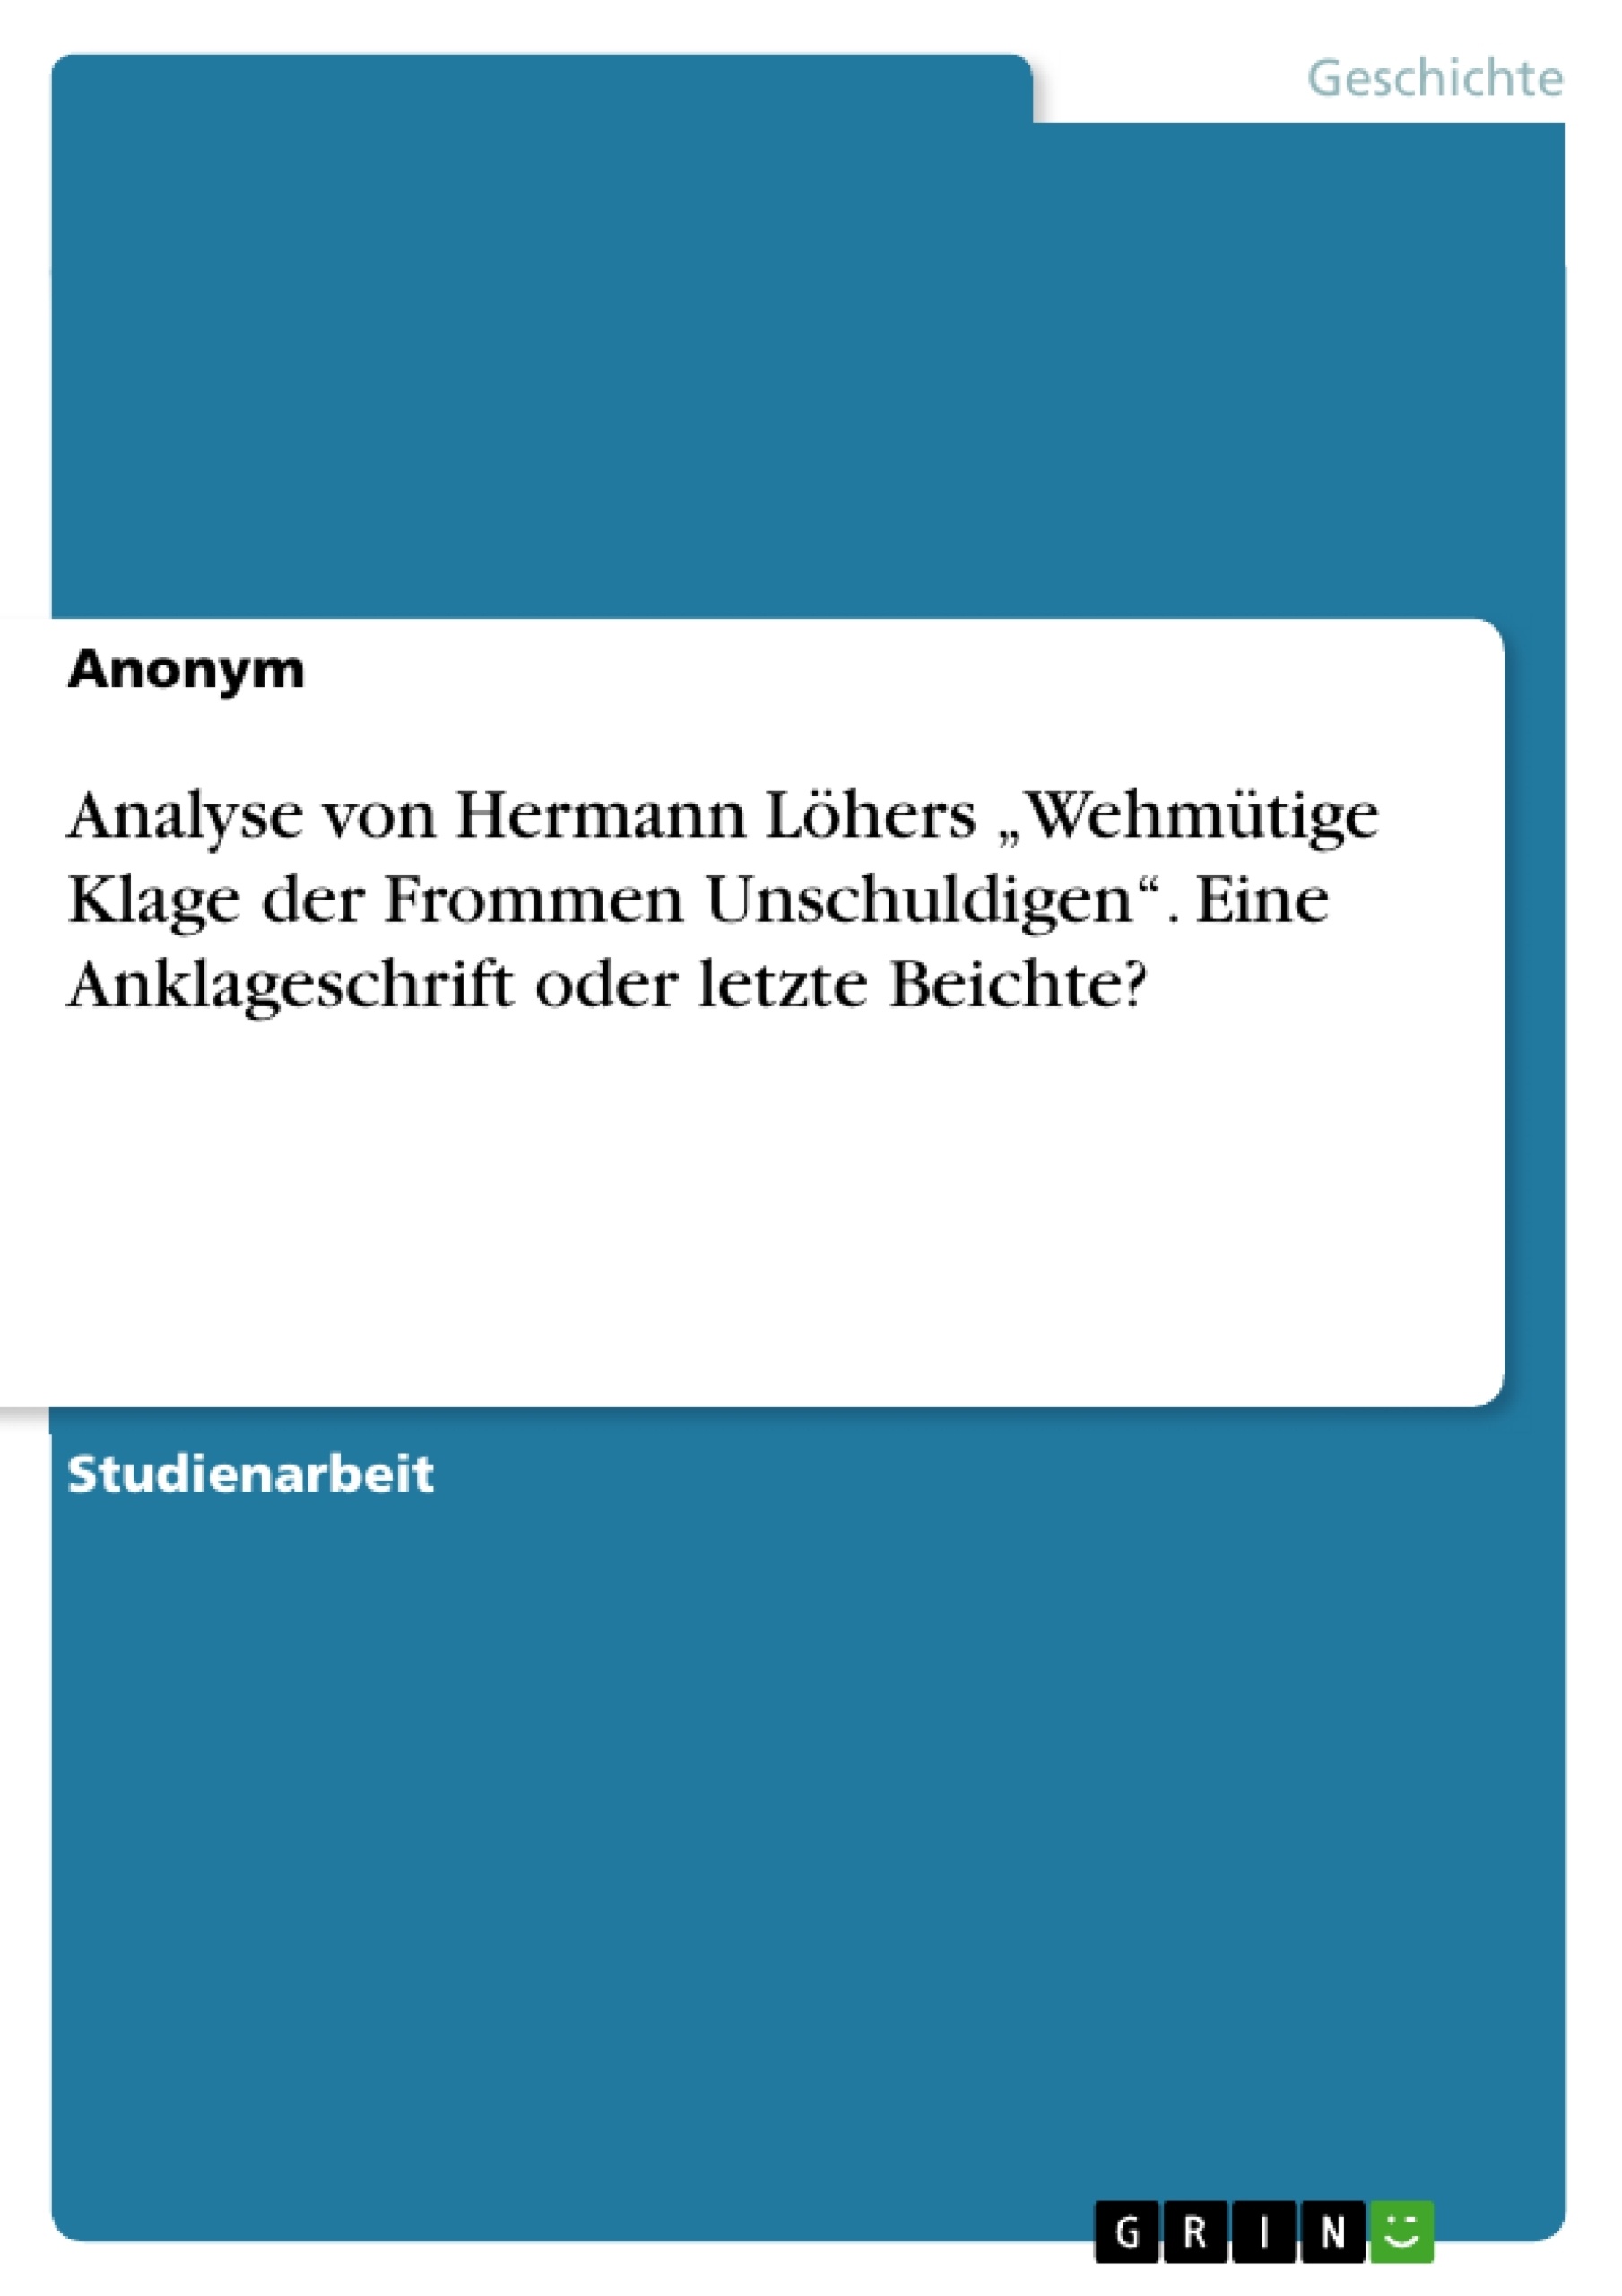 Title: Analyse von Hermann Löhers „Wehmütige Klage der Frommen Unschuldigen“. Eine Anklageschrift oder letzte Beichte?